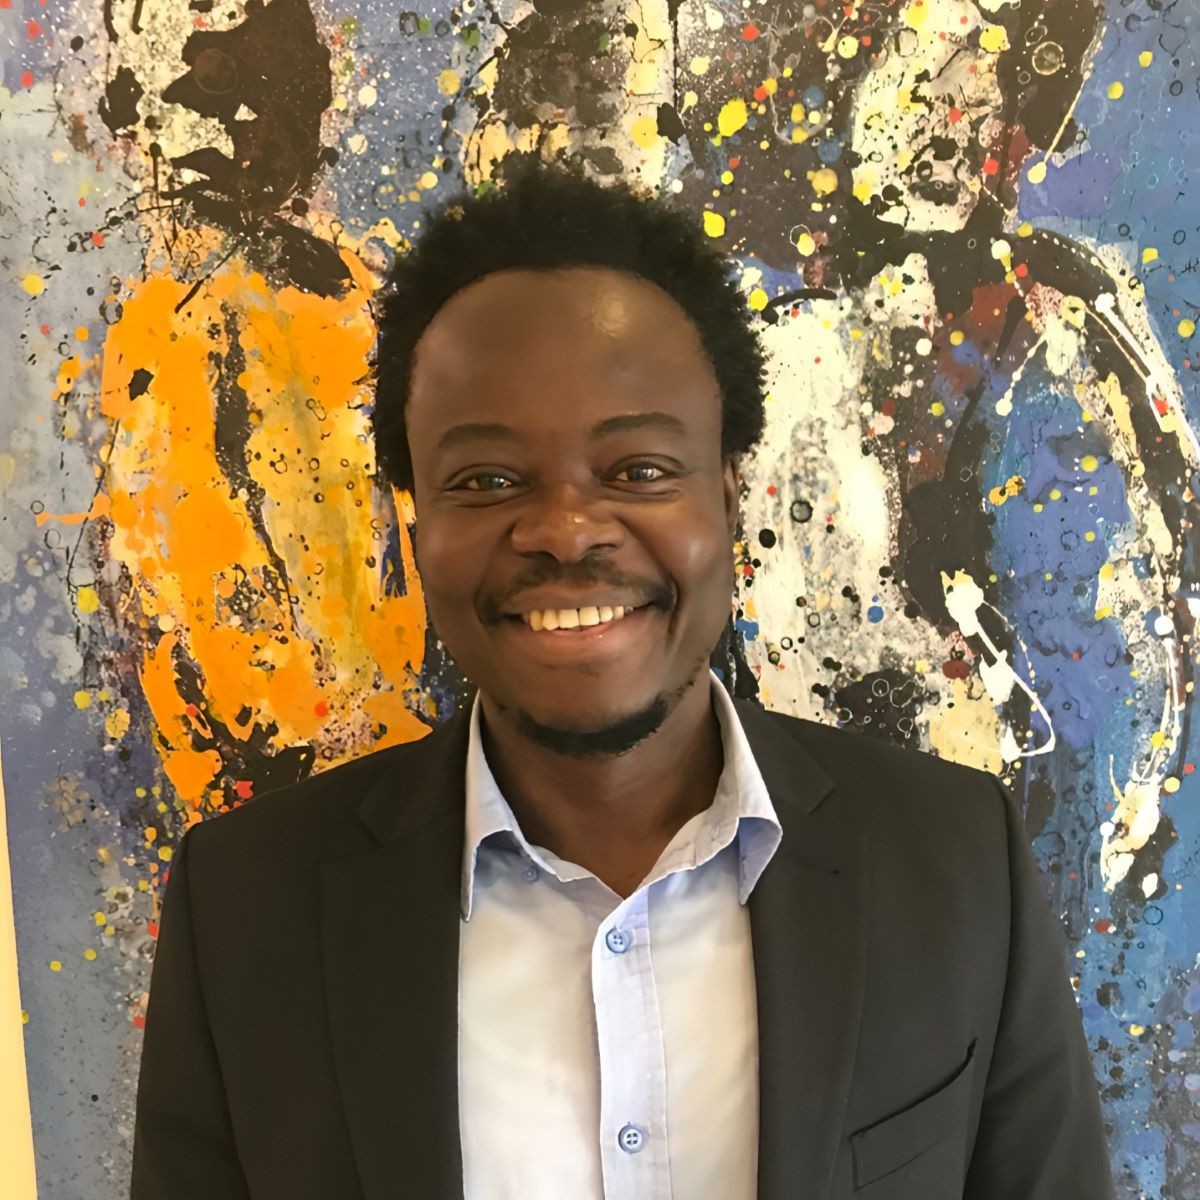 [RDC] Les conditions requises de l'installation d'une FinTech étrangère de micro-crédit. Par Daniel Djedi Djongambolo Ohonge.